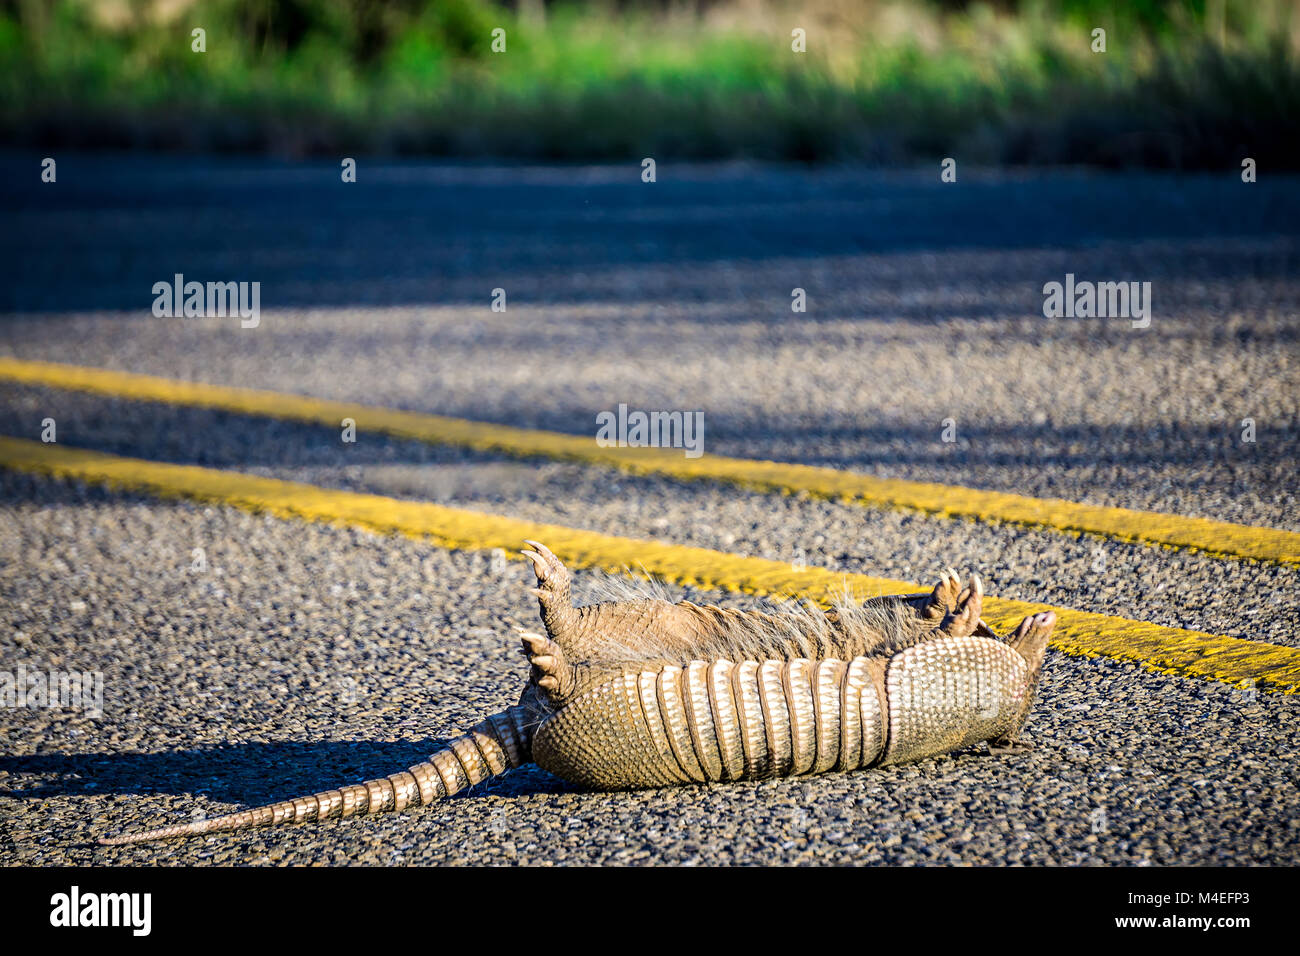 road kill armadillo on the road Stock Photo